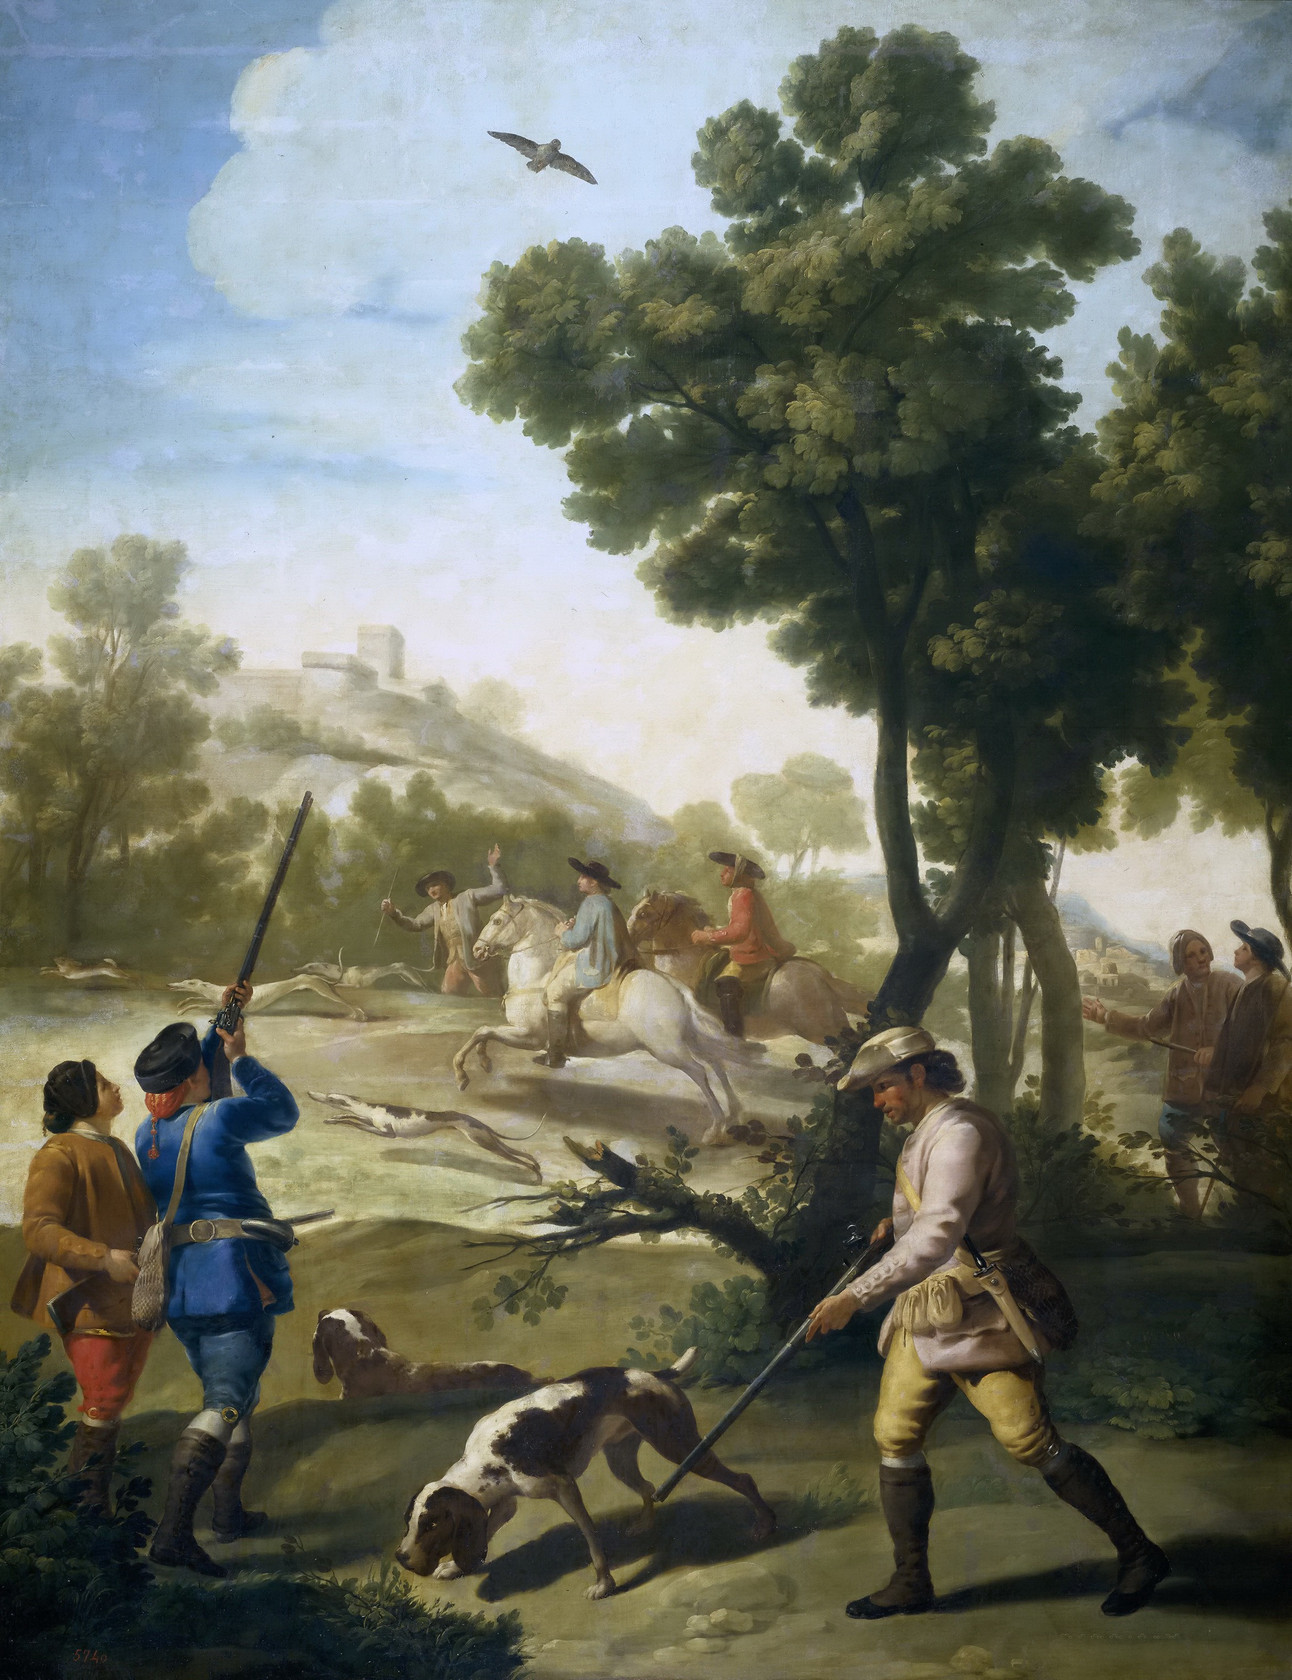 Картина - Охота, 1775